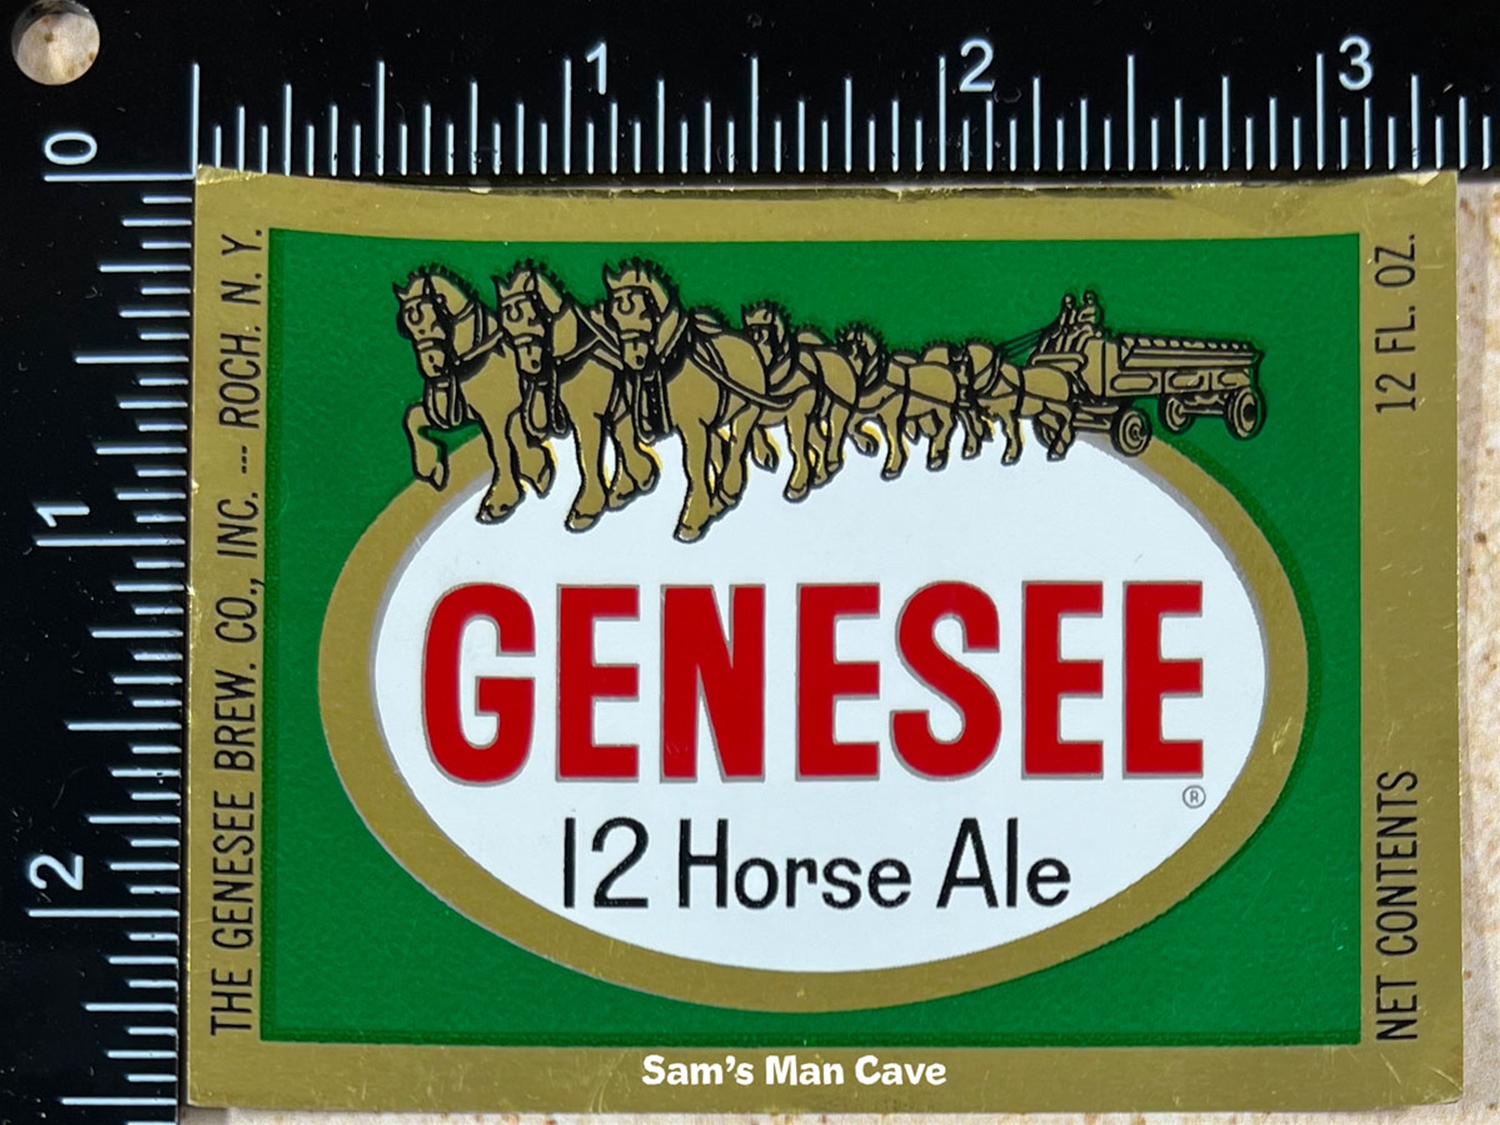 Genesee 12 Horse Ale Beer Label (foil)